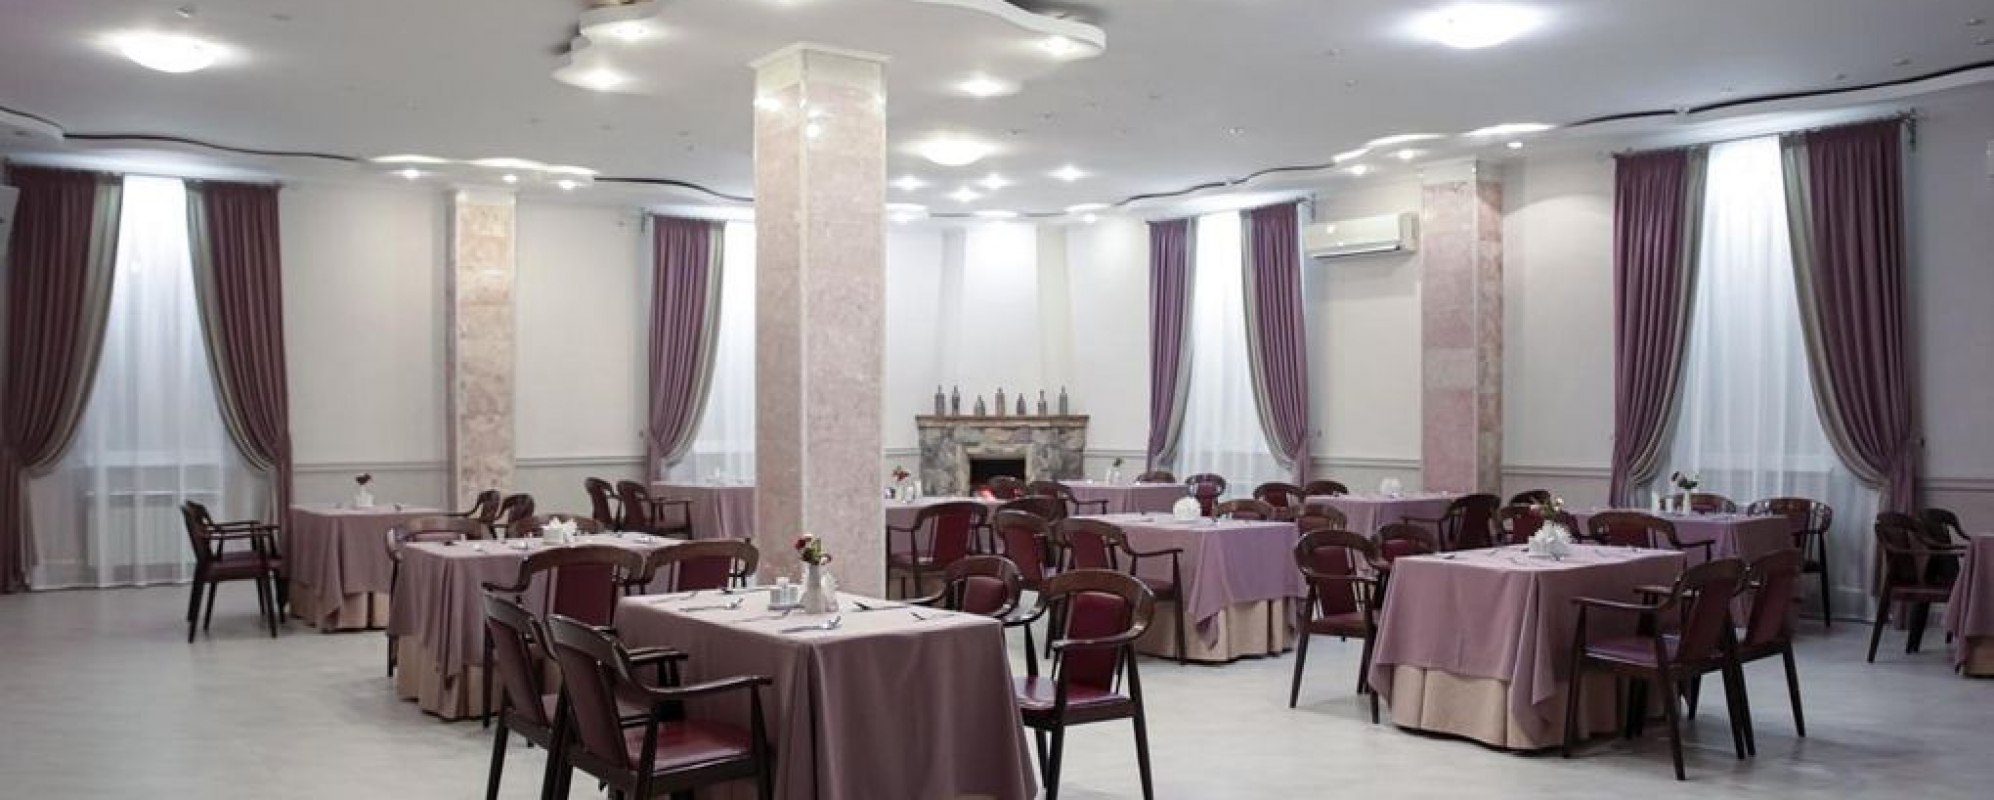 Фотографии банкетного зала Банкетный зал ресторана Салют